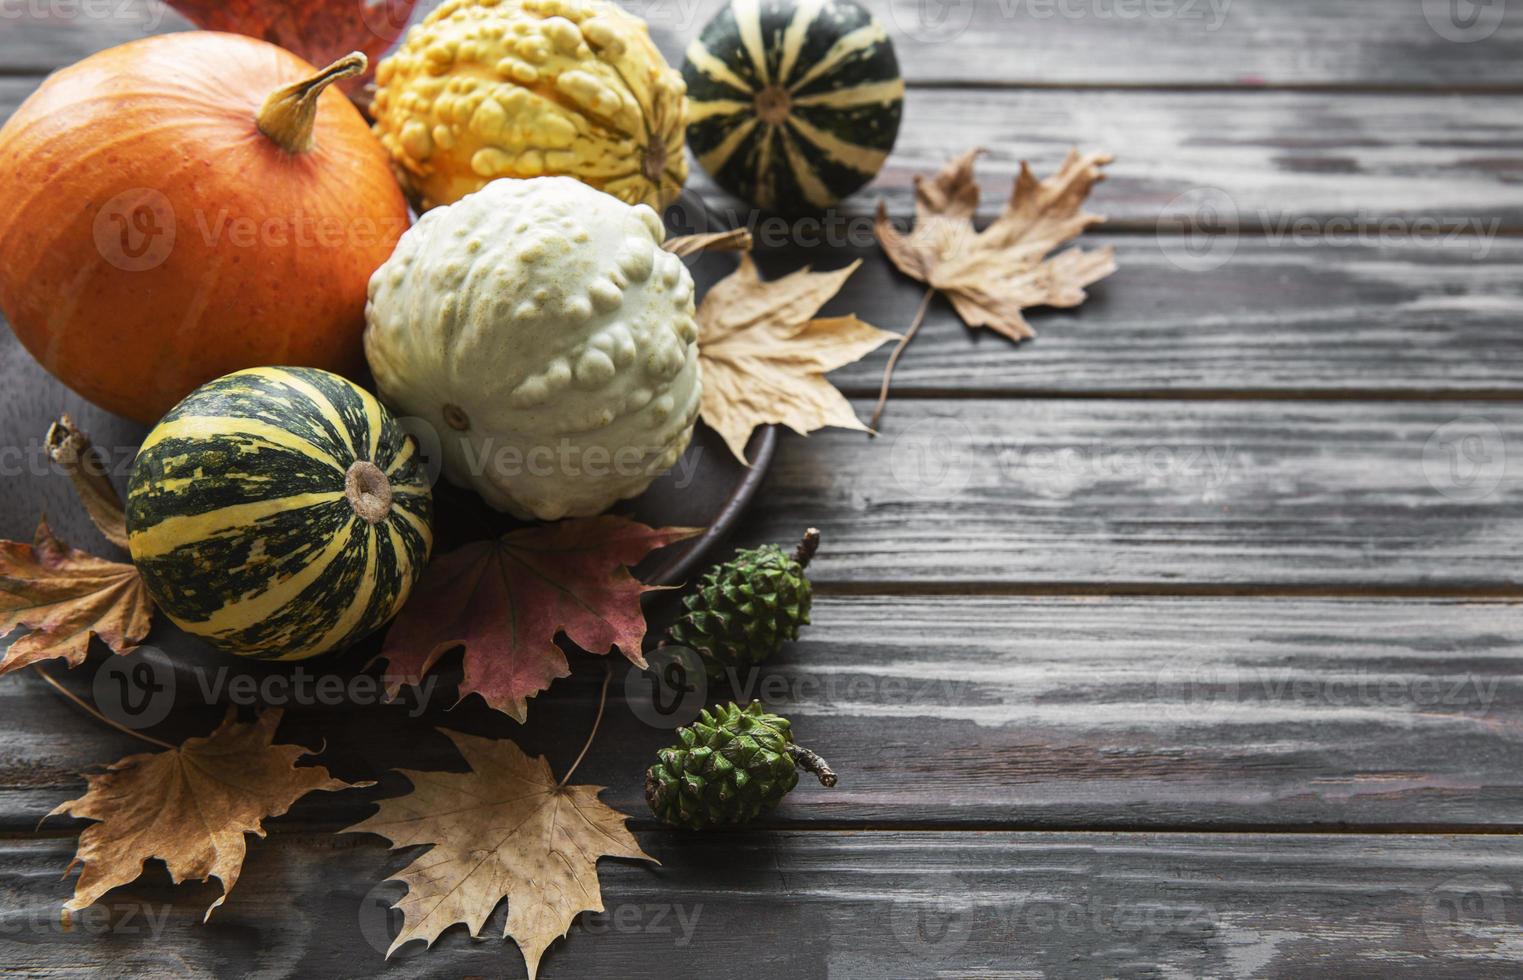 composición de otoño con calabazas surtidas foto